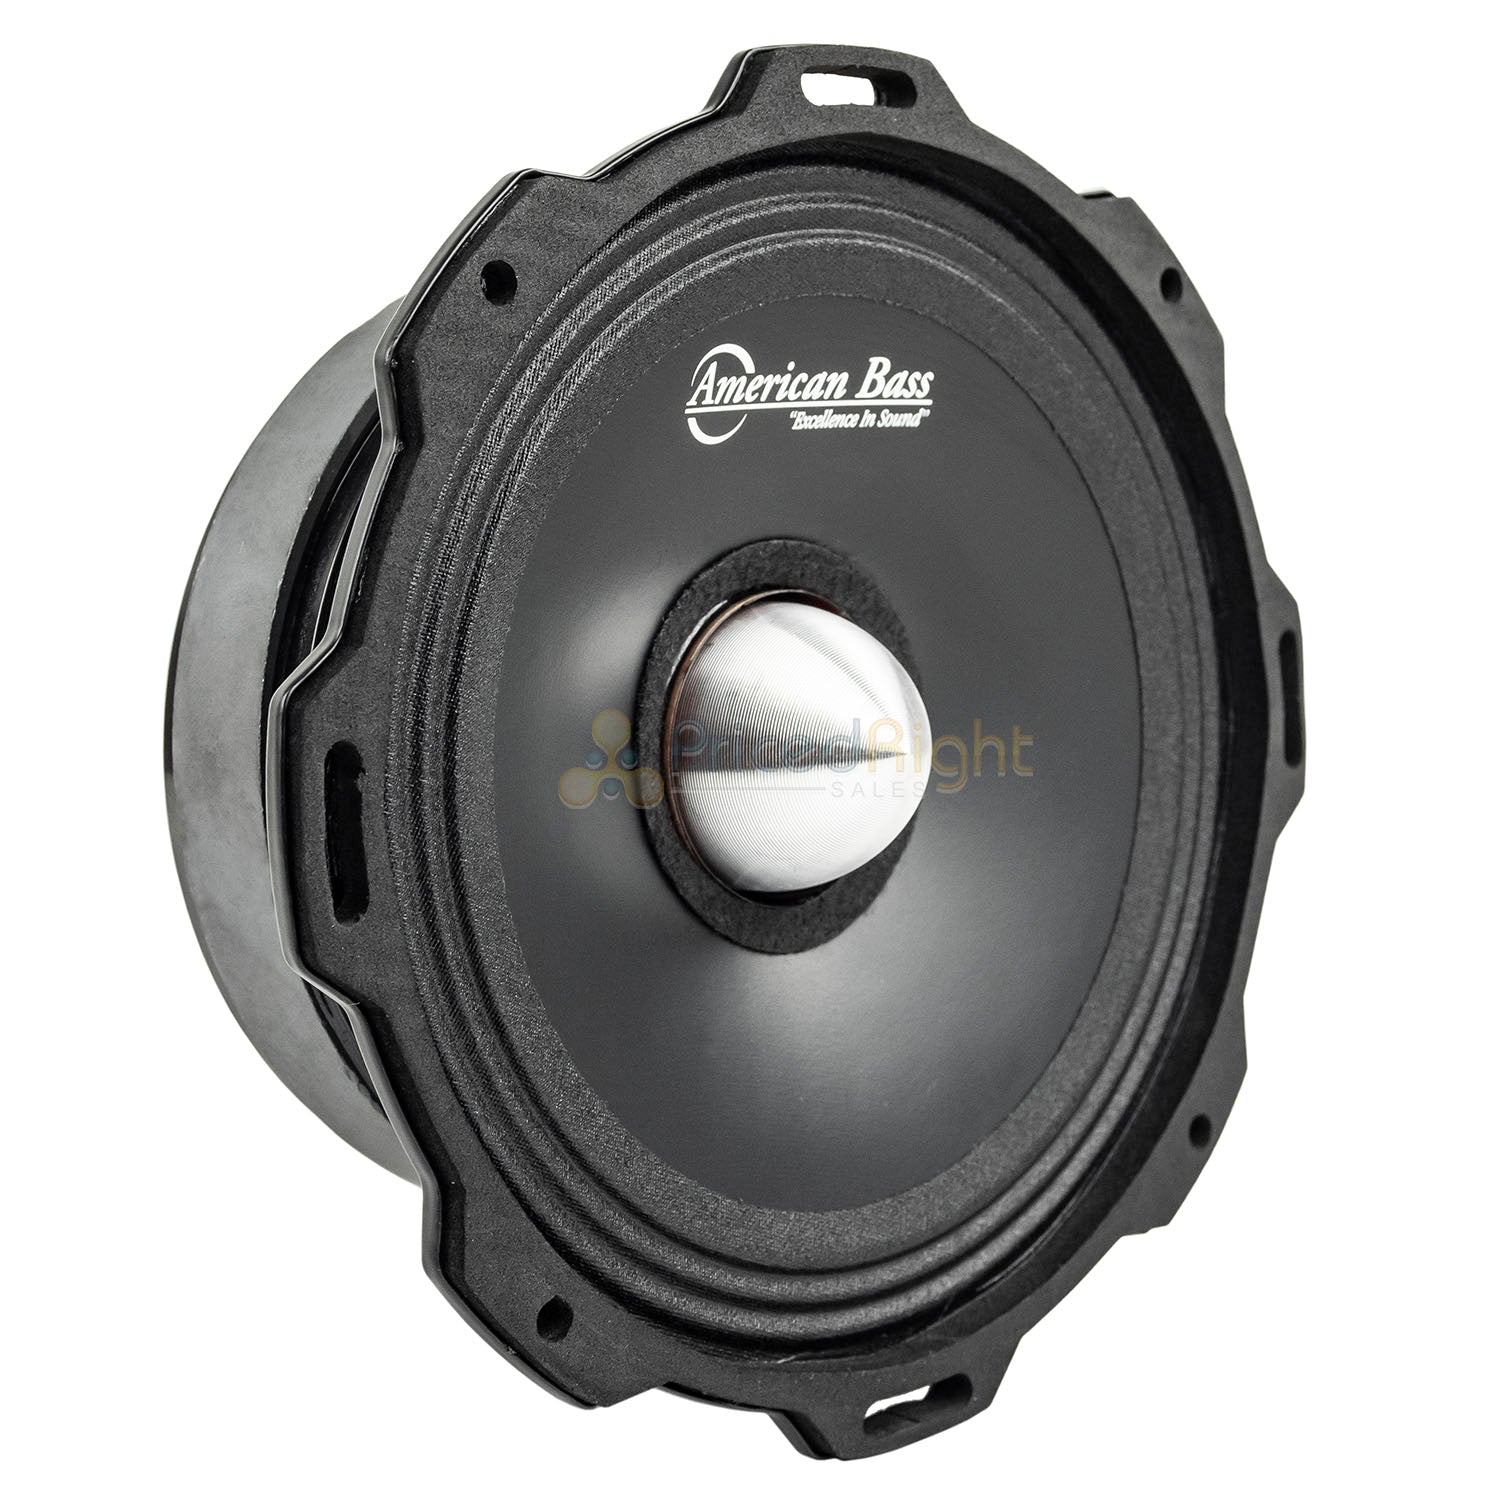 American Bass GF-6.5 L-MR 6.5" Midrange Speakers Godfather 600 Watts Max 2 Pack